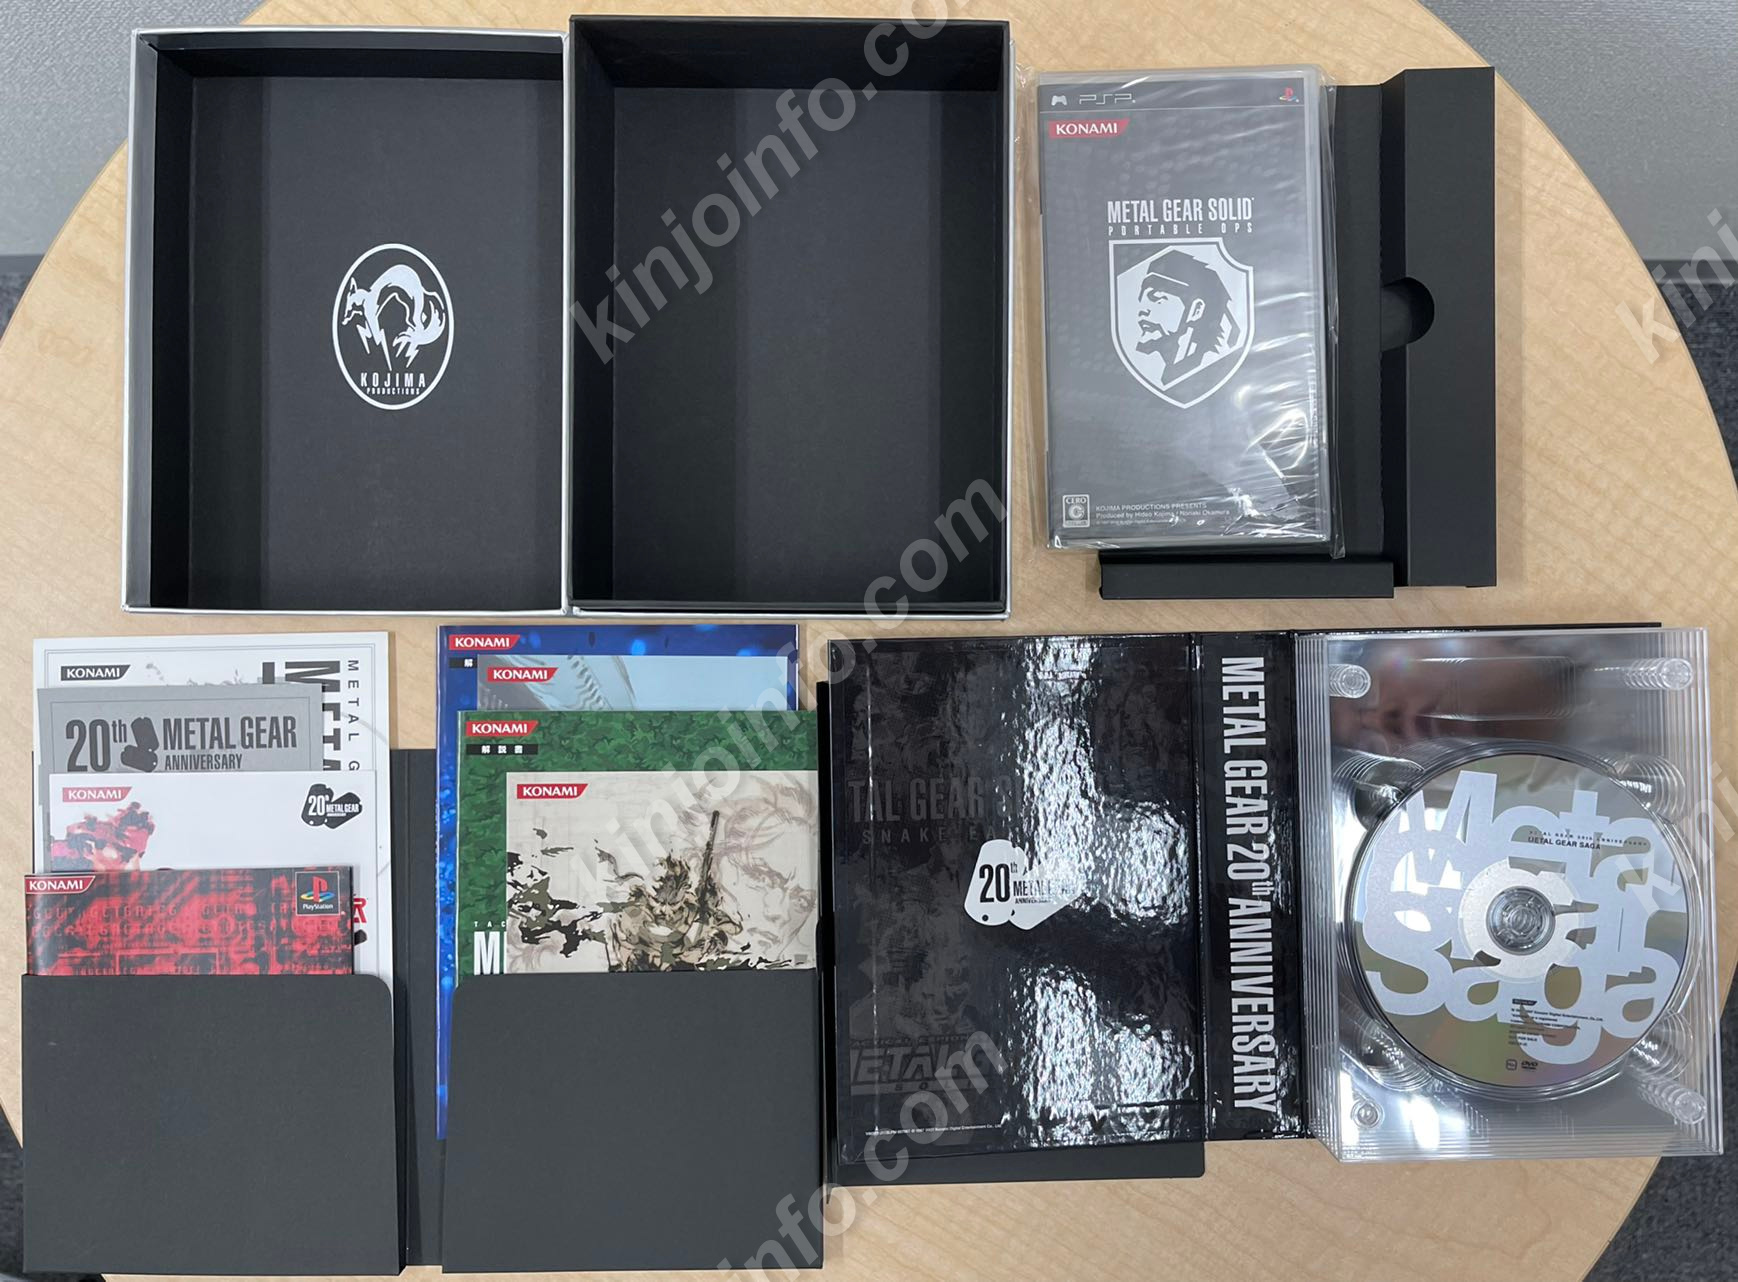 メタルギアソリッドコレクション 1987 - 2007 - テレビゲーム